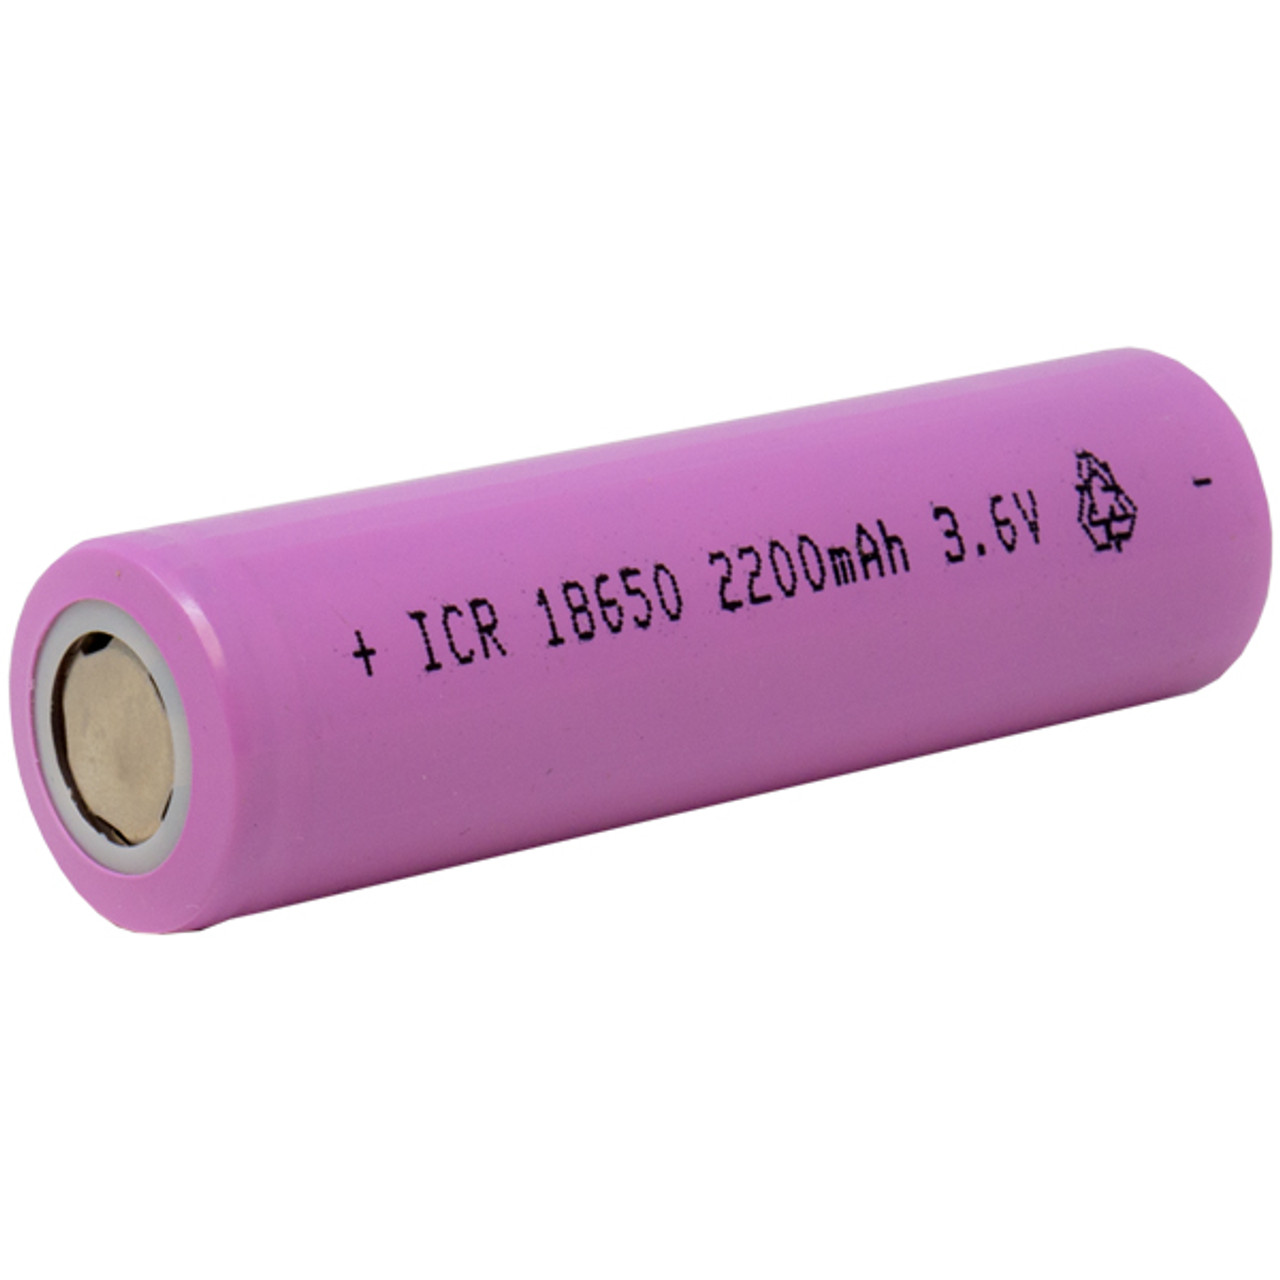 Batería recargable Li-ion 2200 mAh tipo 18650 con tip p